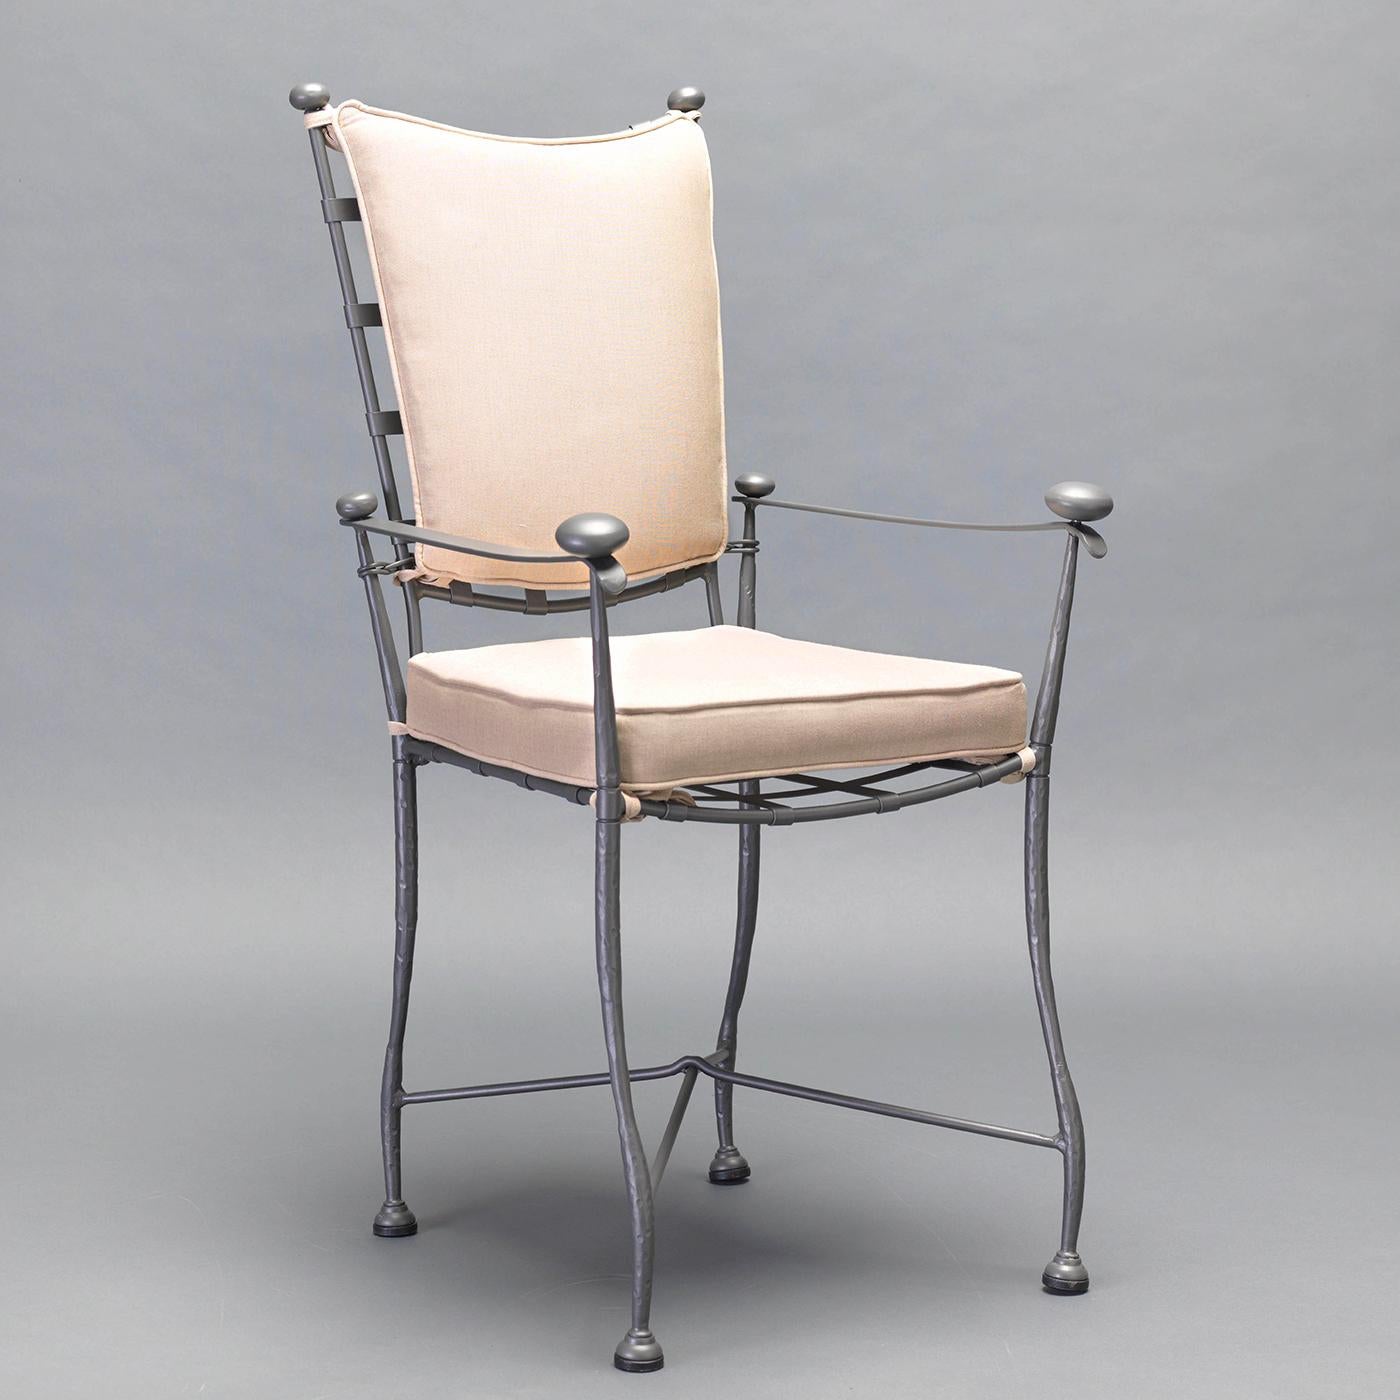 Dieser zeitlose Stuhl verkörpert die rustikal-schicke Eleganz der toskanischen Landschaft. Das vollständig aus geschmiedetem Edelstahl gefertigte Möbelstück besticht durch seine wellenförmigen Beine, die geschwungenen Details an der Vorderseite der